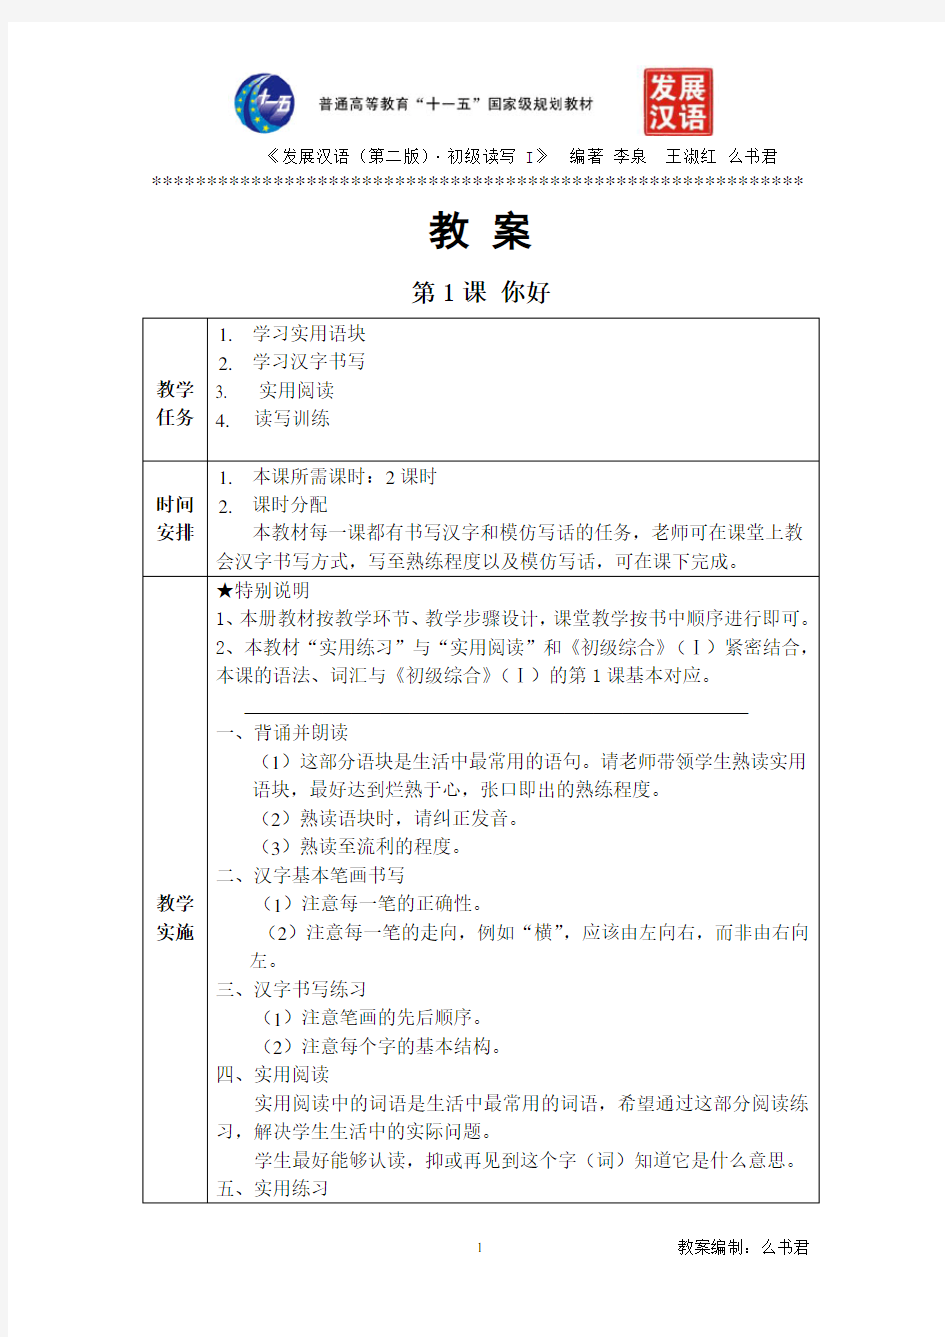 发展汉语(第二版)初级读写(Ⅰ)第1课教案+